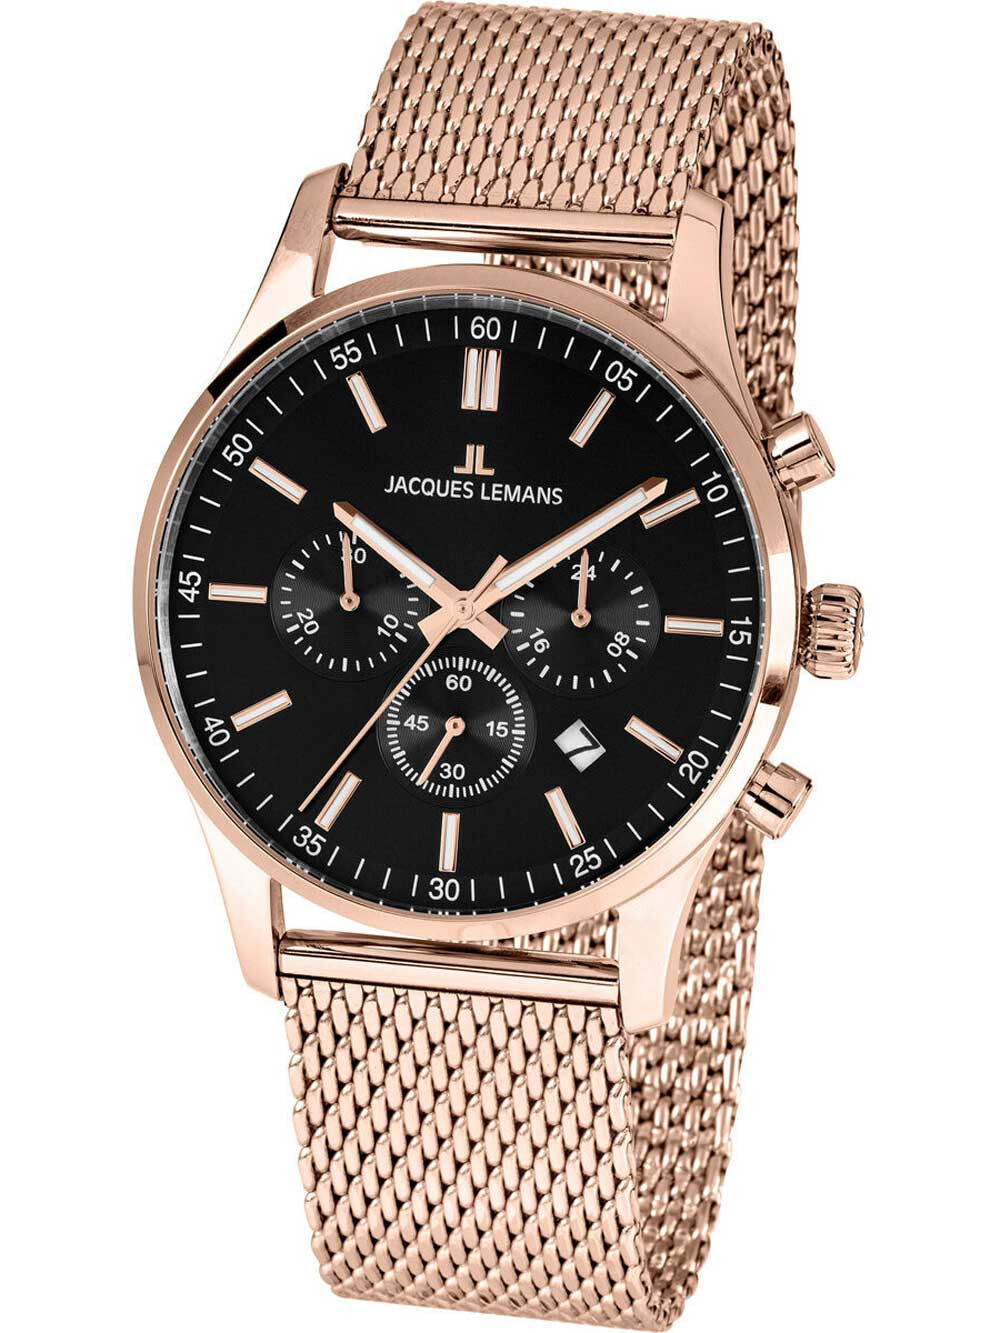 Мужские наручные часы с золотым браслетом Jacques Lemans 1-2025I London chrono 42 mm 10ATM